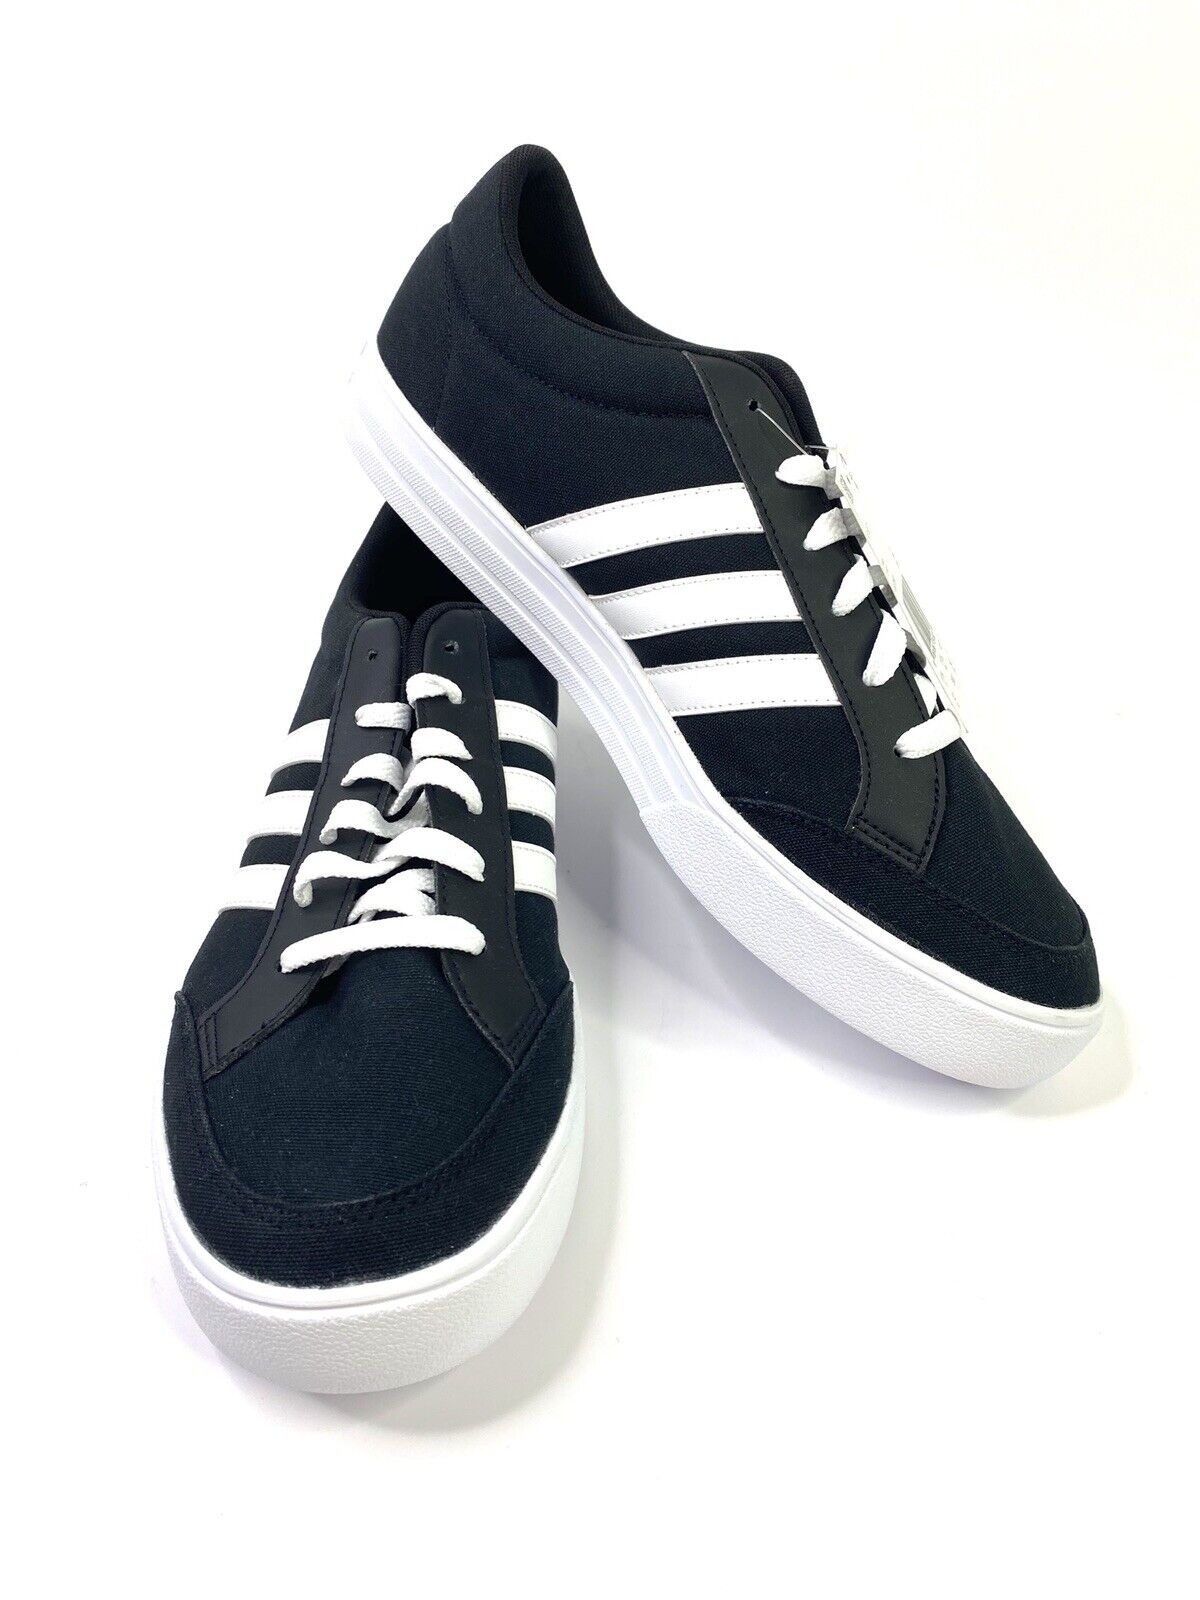 precio Amoroso Ladrillo Adidas VS SET Mens Shoes AW3890 Size 12 Black-White Sneakers Skate NWT |  eBay